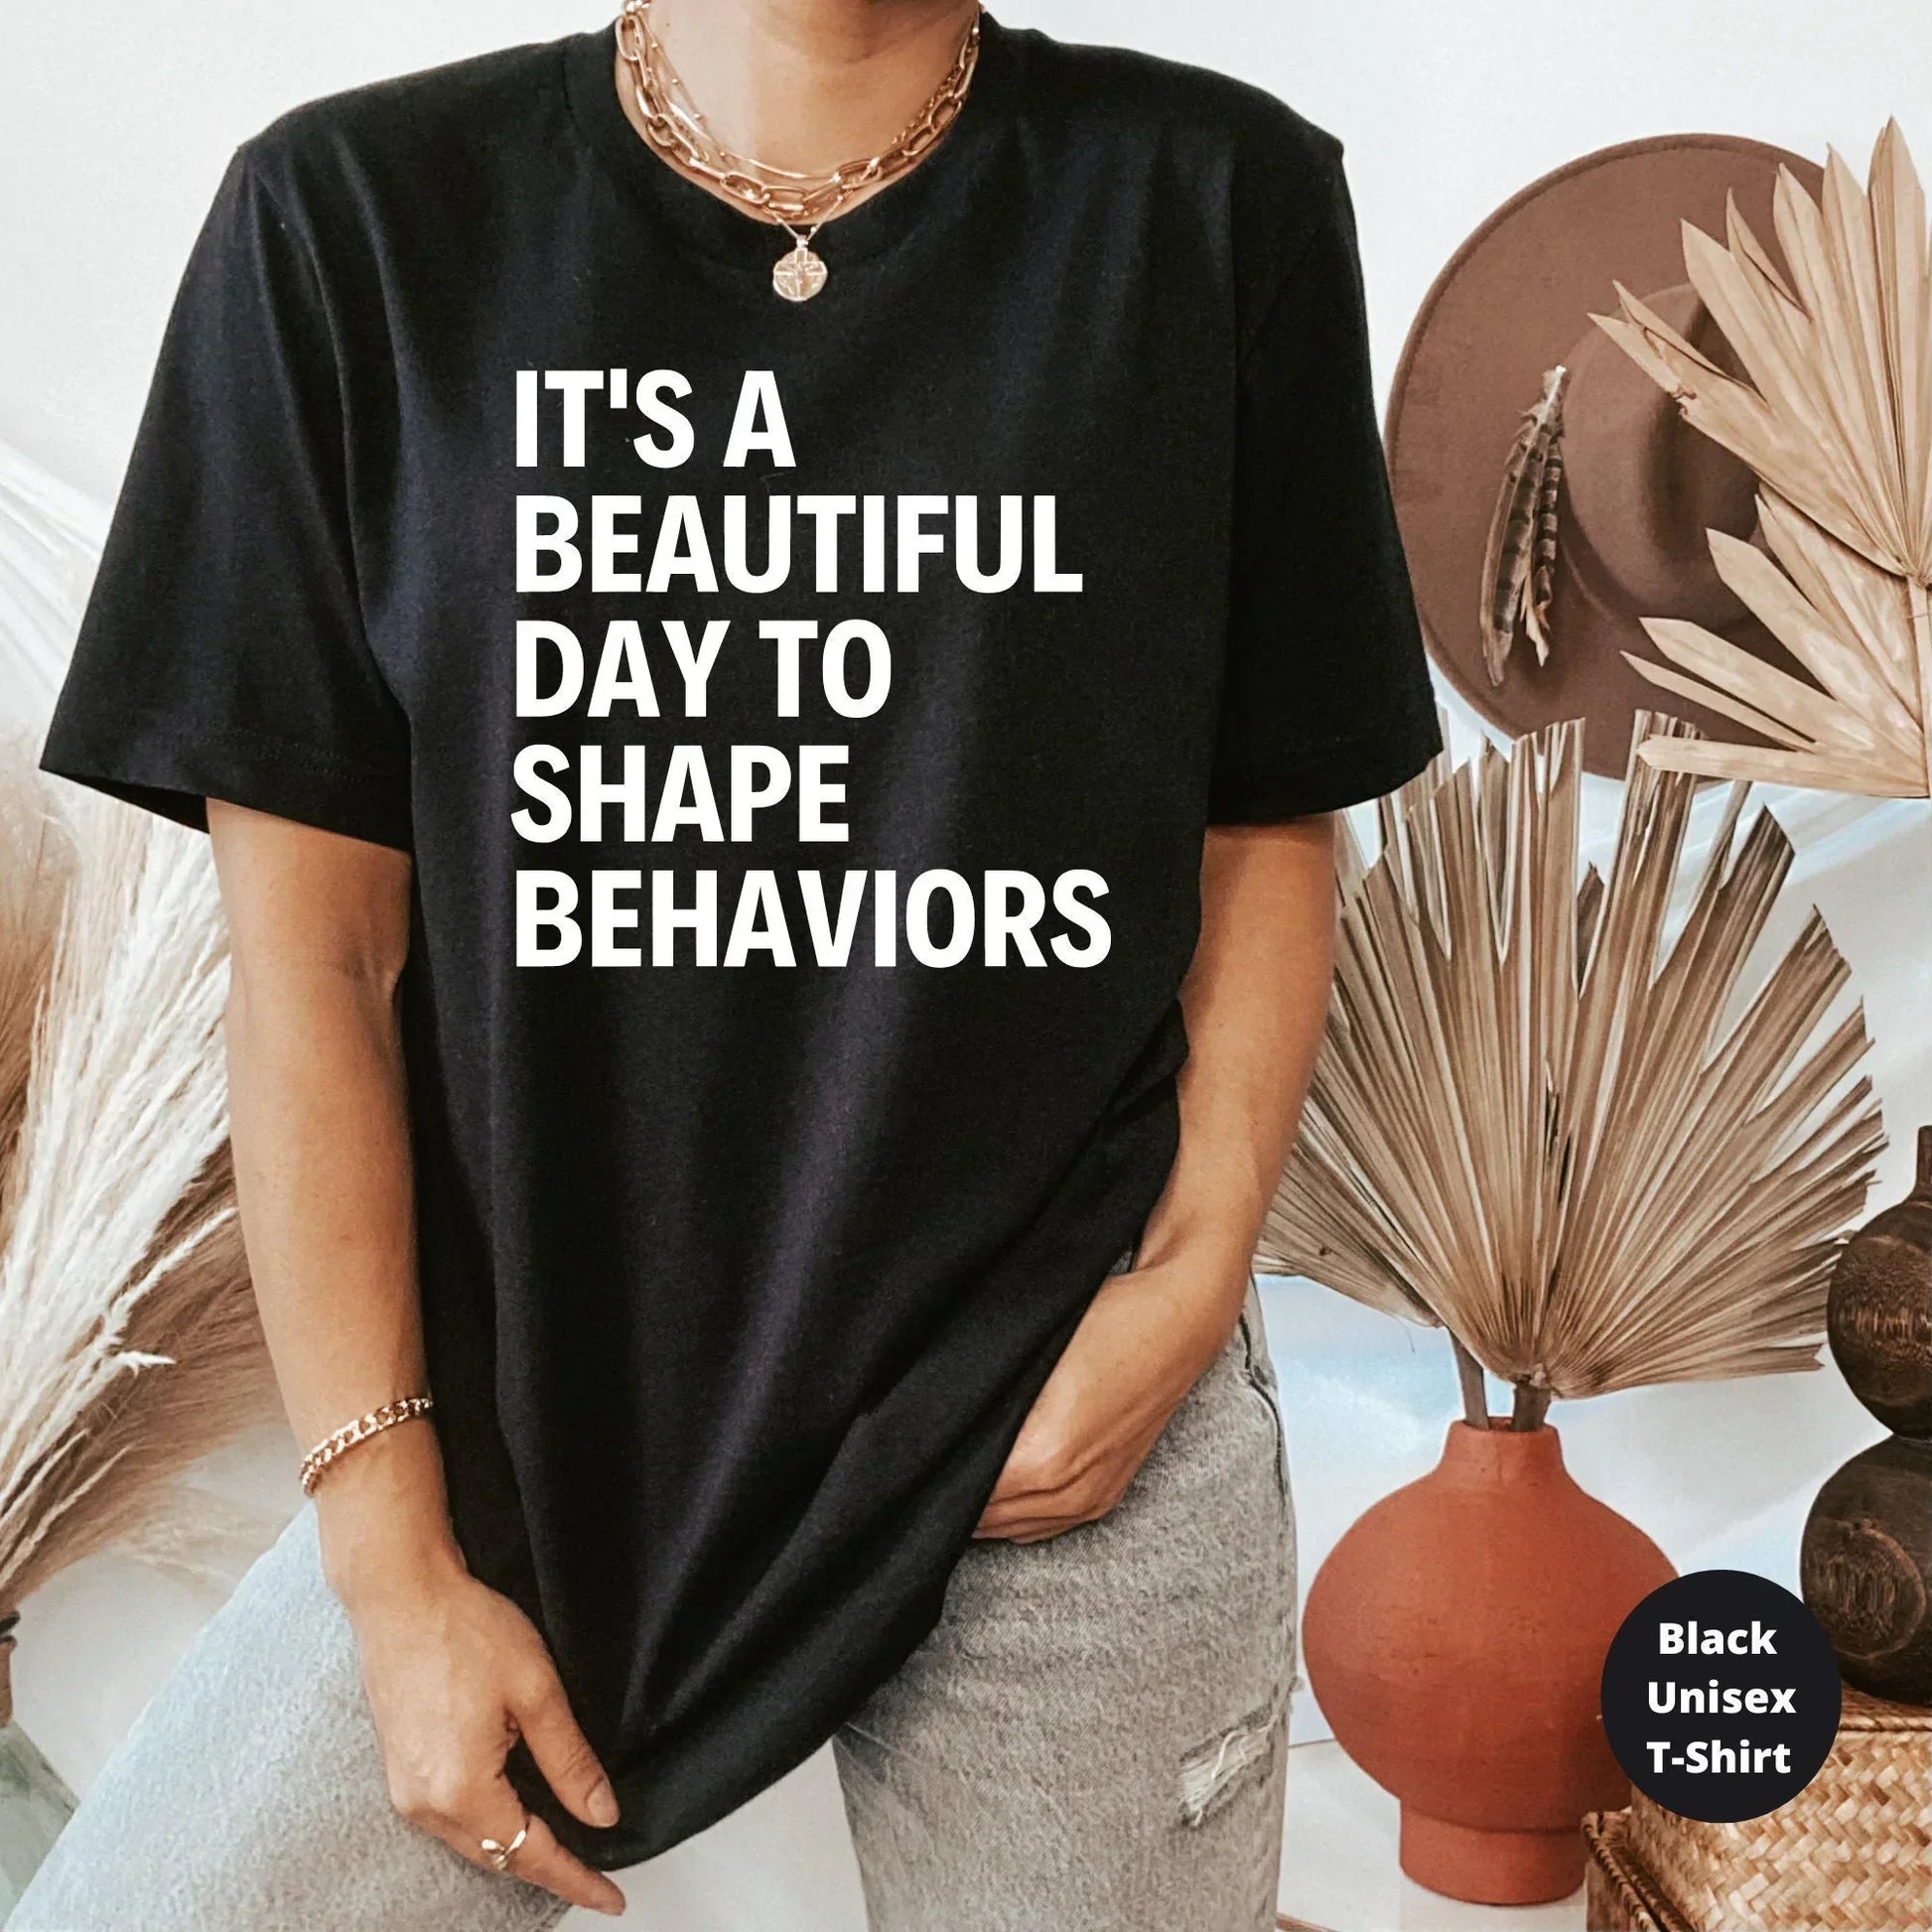 Behavior is Communication Elementary Teacher Shirt